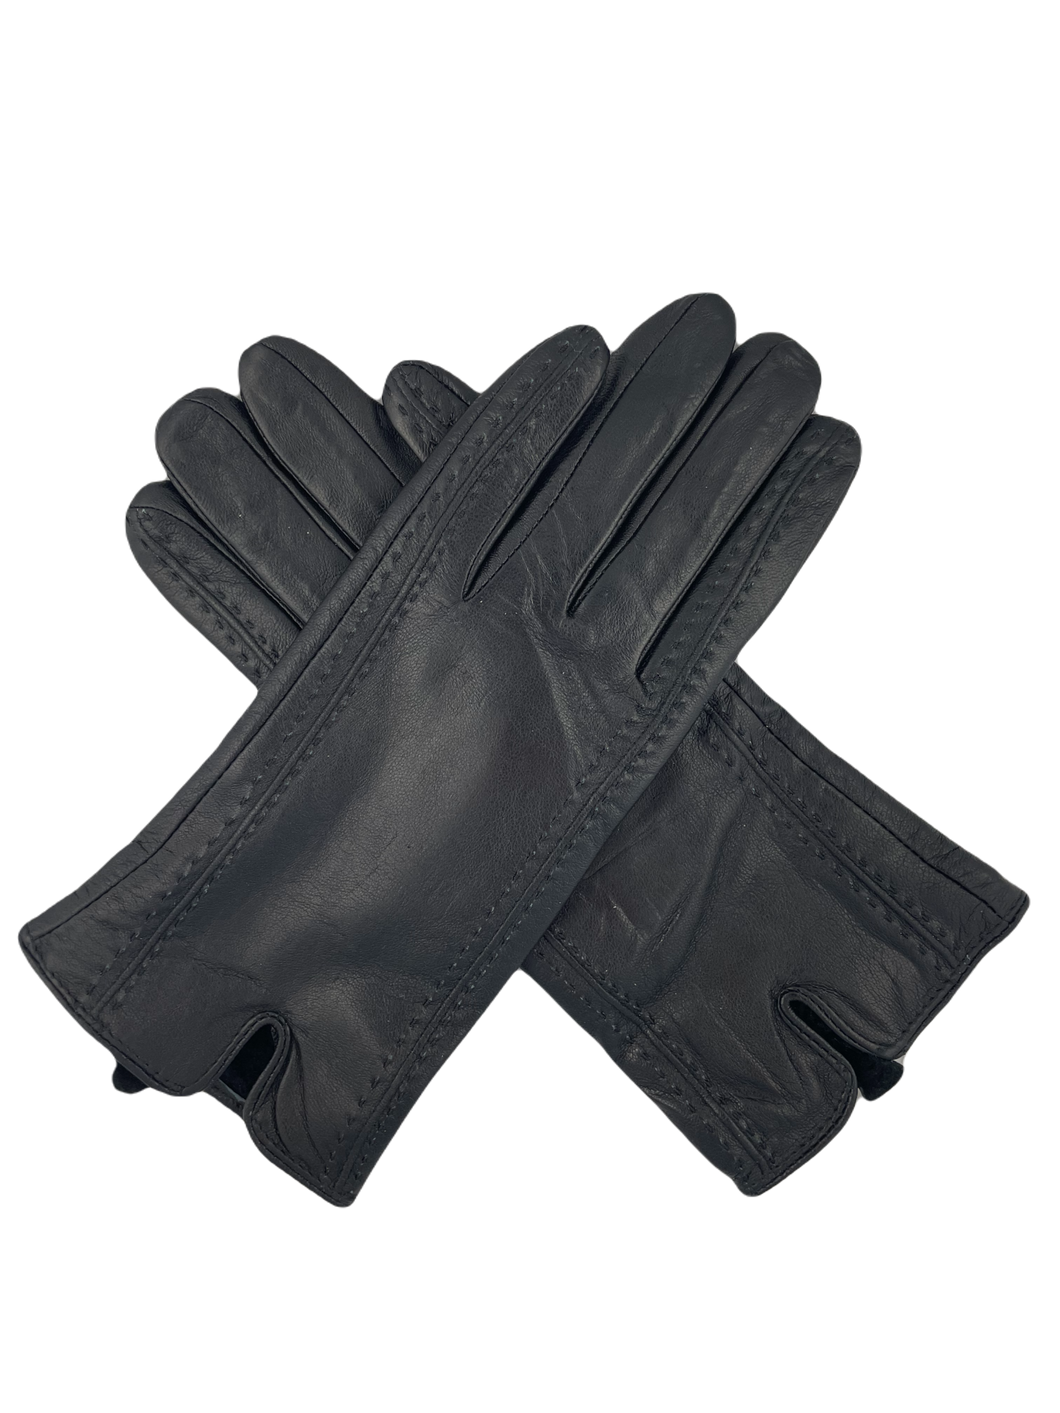 Echte lederen handschoenen uit Italië, met mooi stiksel als leuk detail. Deze handschoenen zijn verkrijgbaar in verschillende maten, ze vallen redelijk klein.